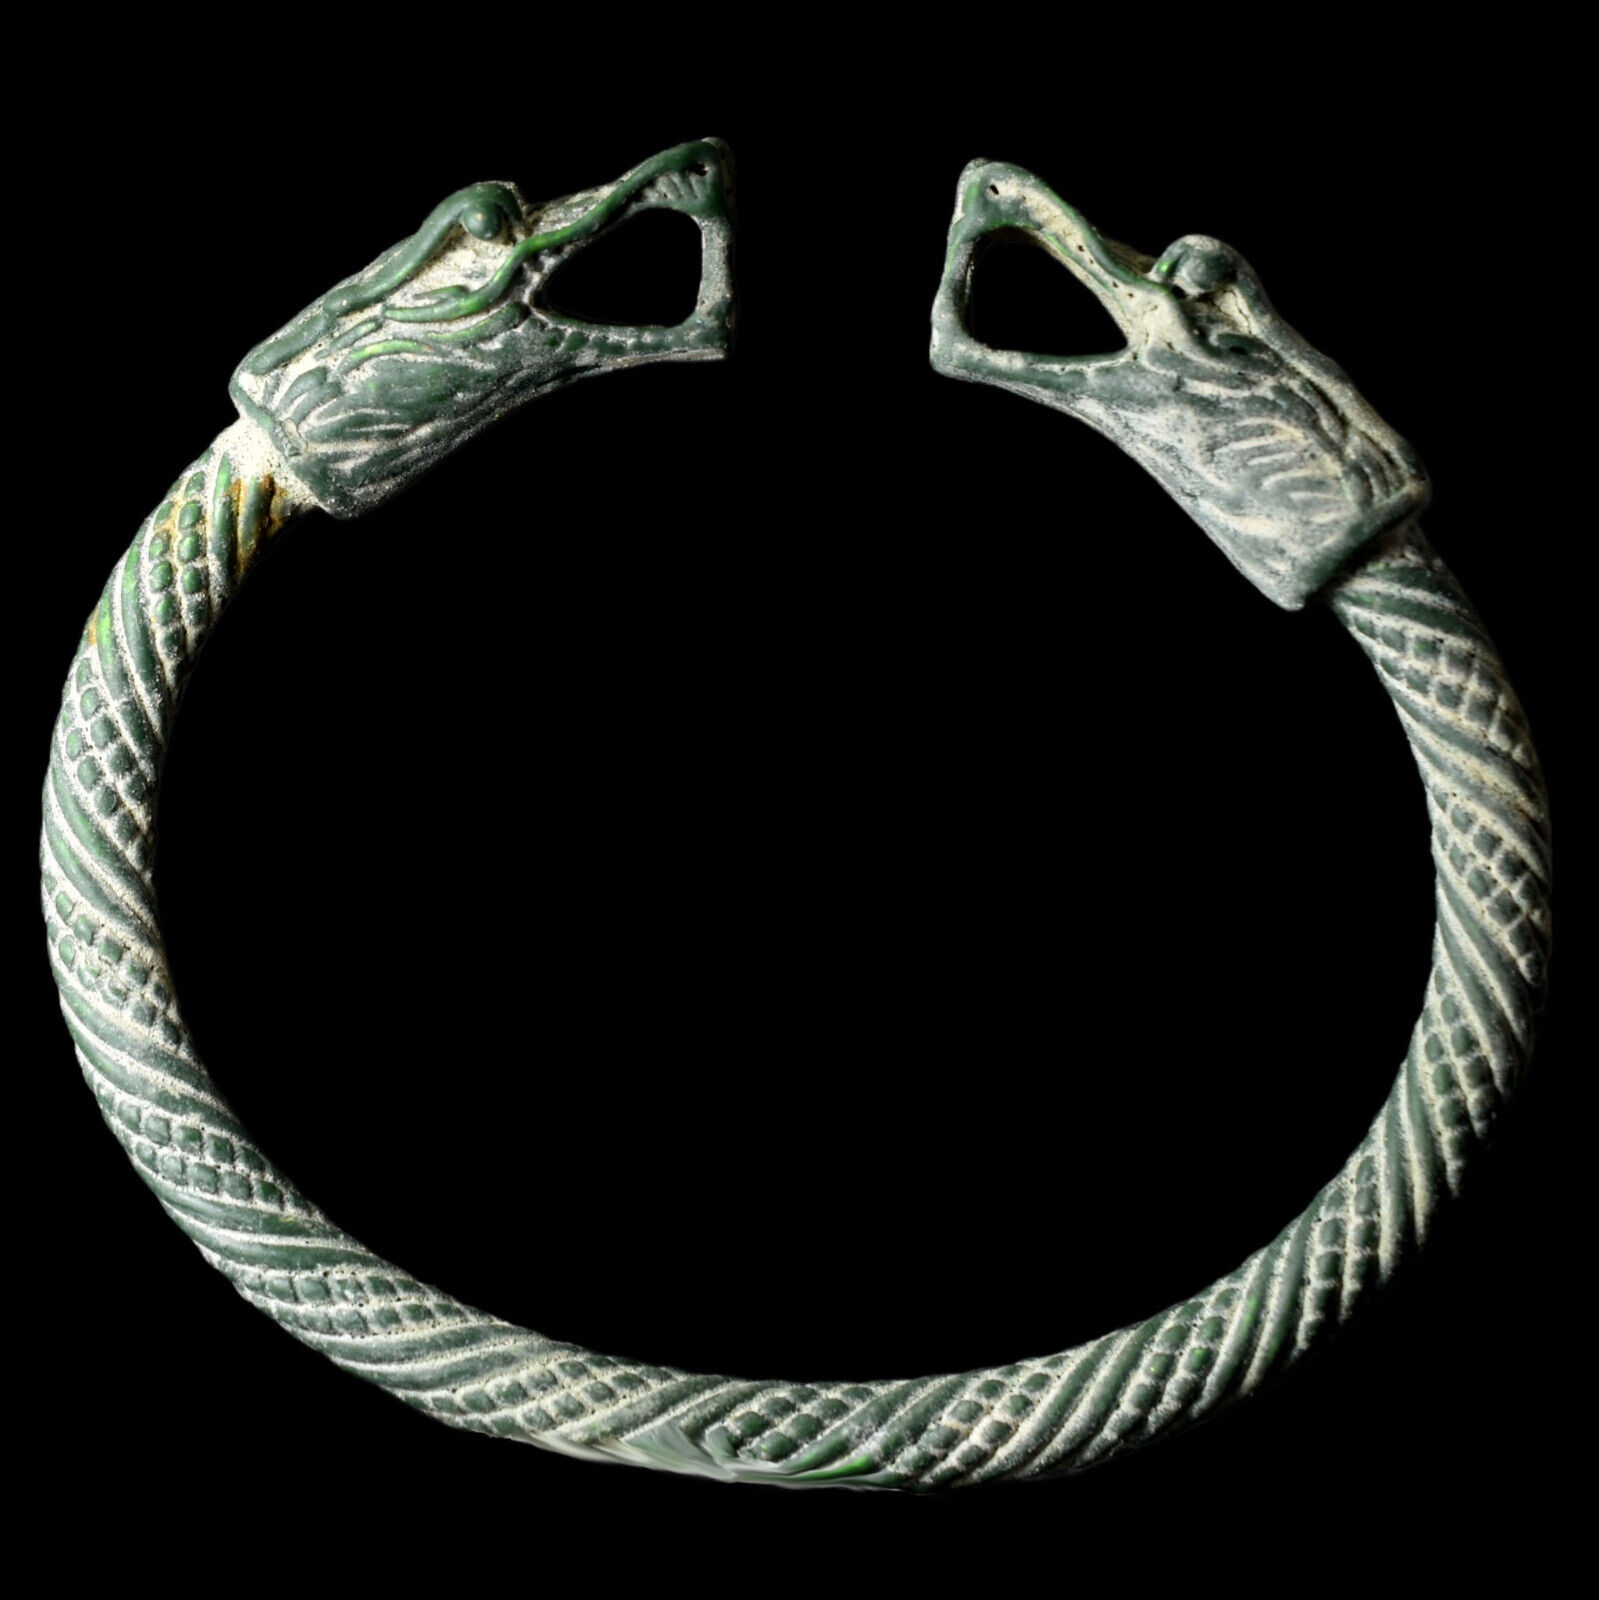 (Replica) Ancient Roman Bronze Bracelet Dragon Heads 100-300 A.D. Antique Patina